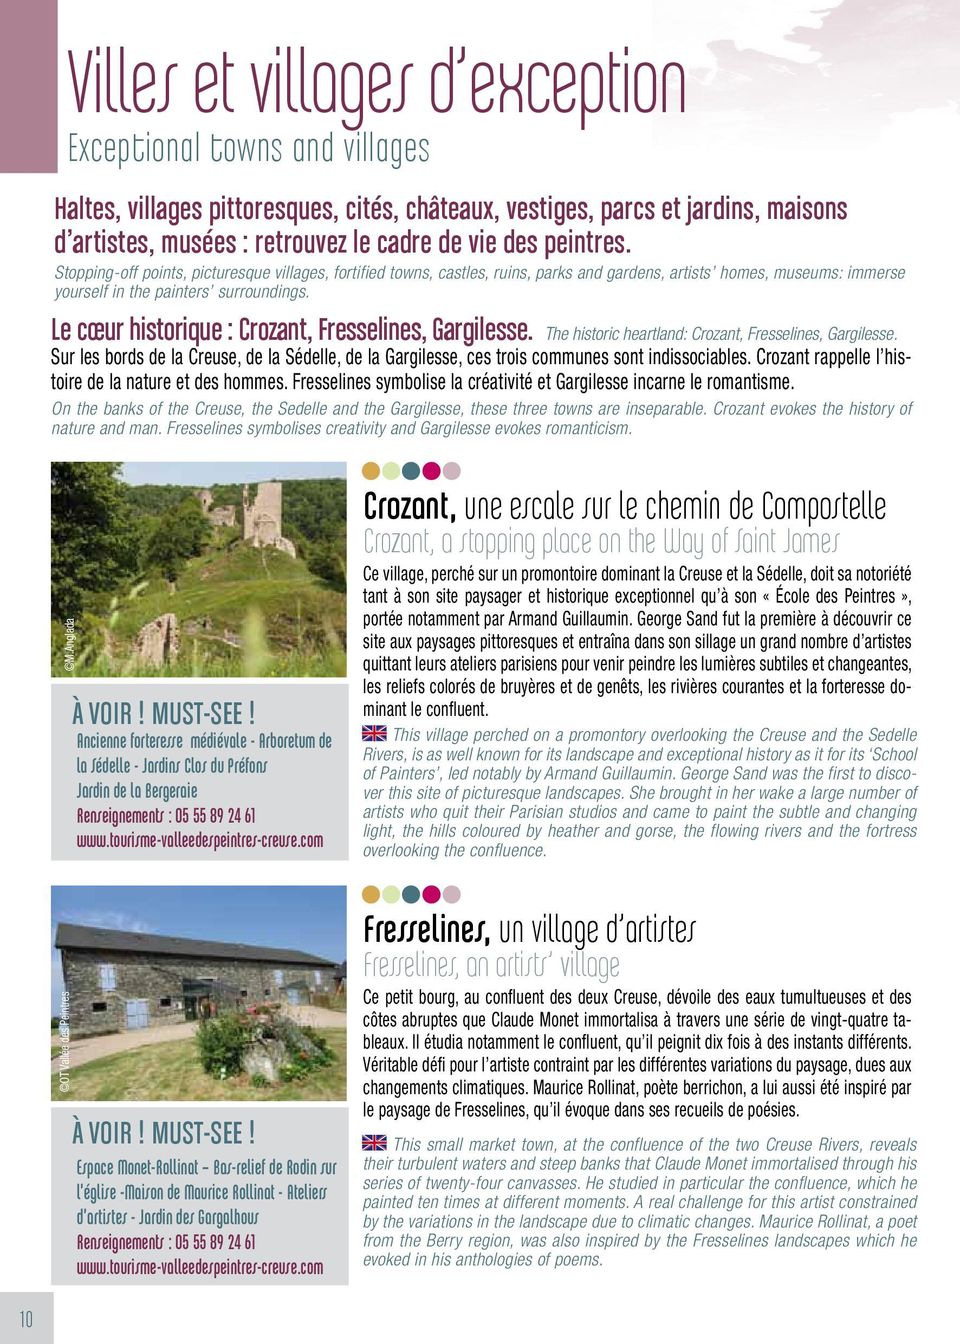 Le cœur historique : Crozant, Fresselines, Gargilesse. The historic heartland: Crozant, Fresselines, Gargilesse.